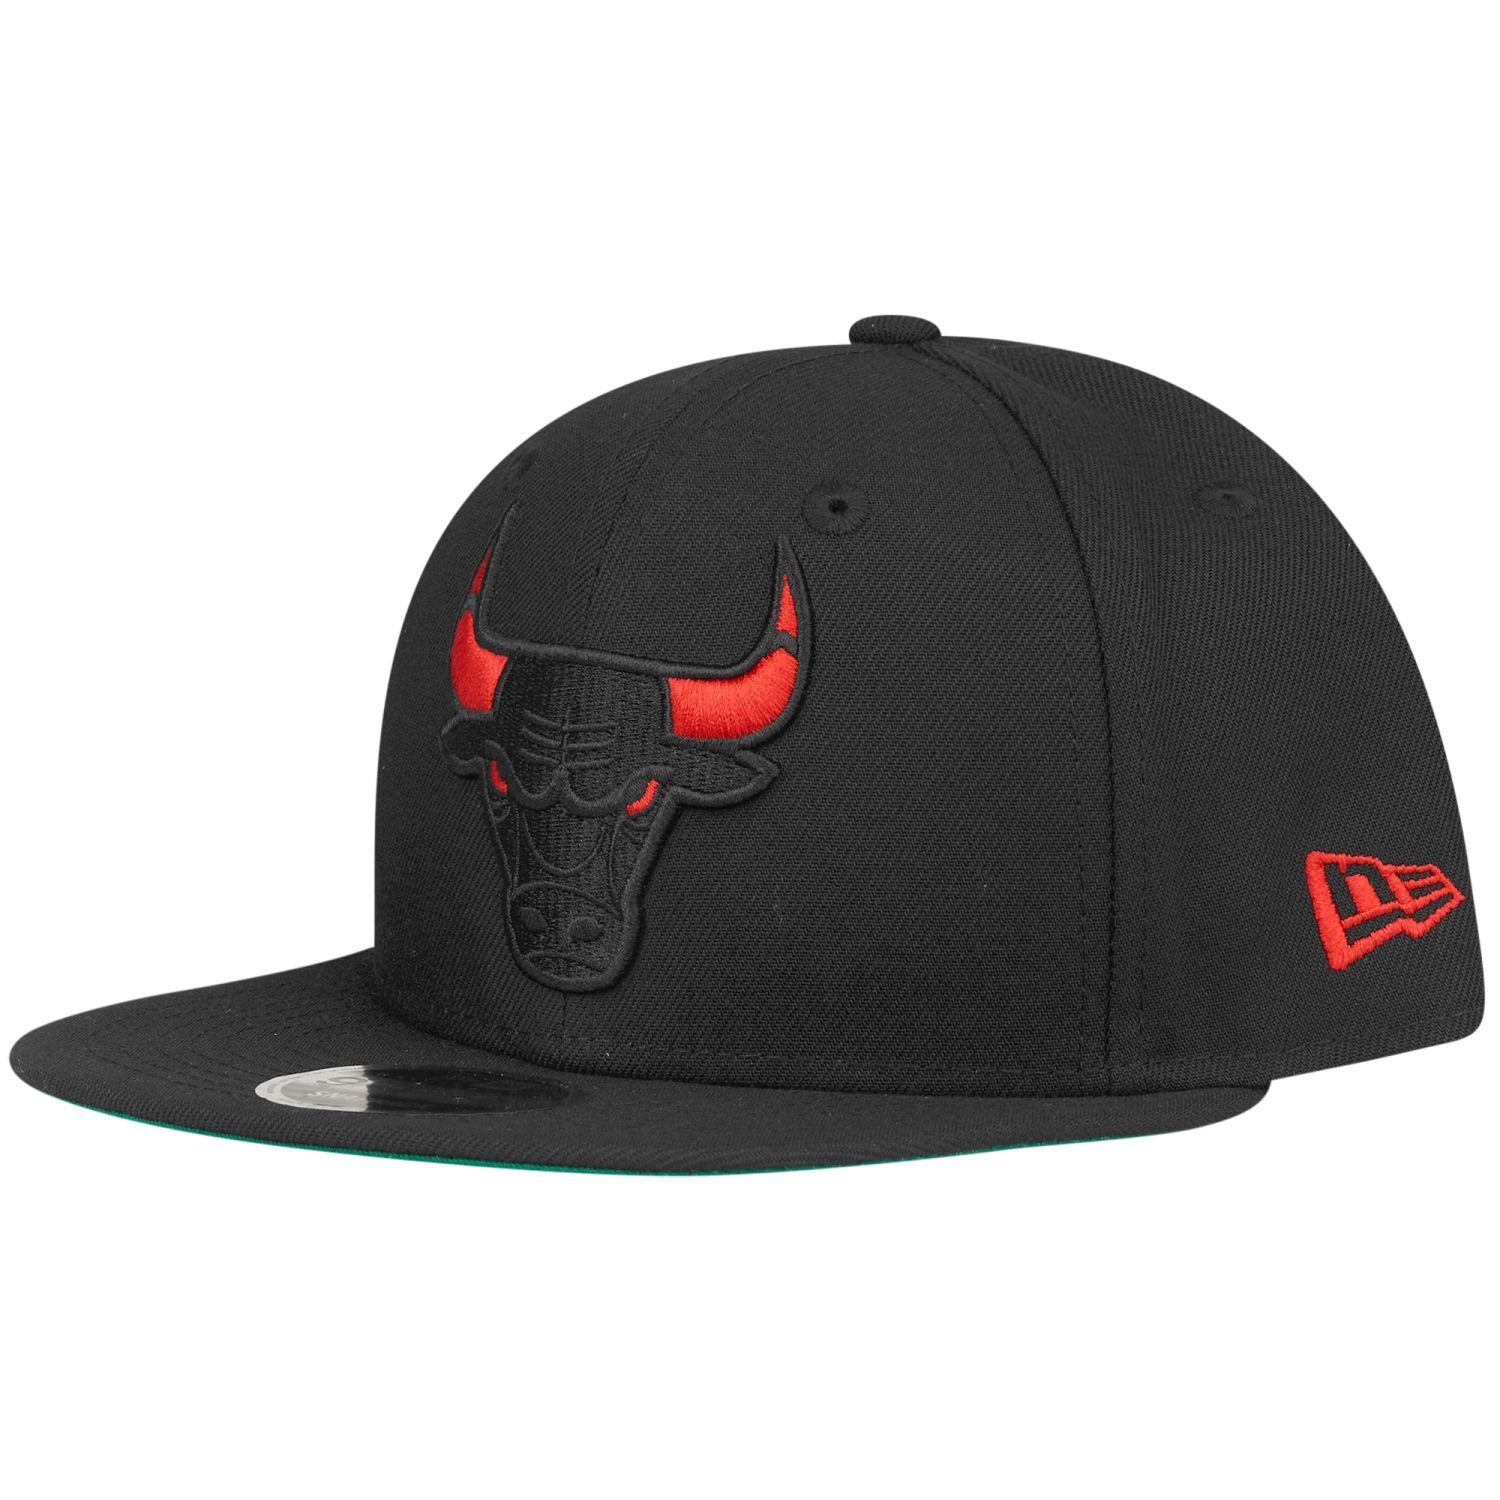 Bulls Cap Snapback New Original Chicago 9Fifty Era